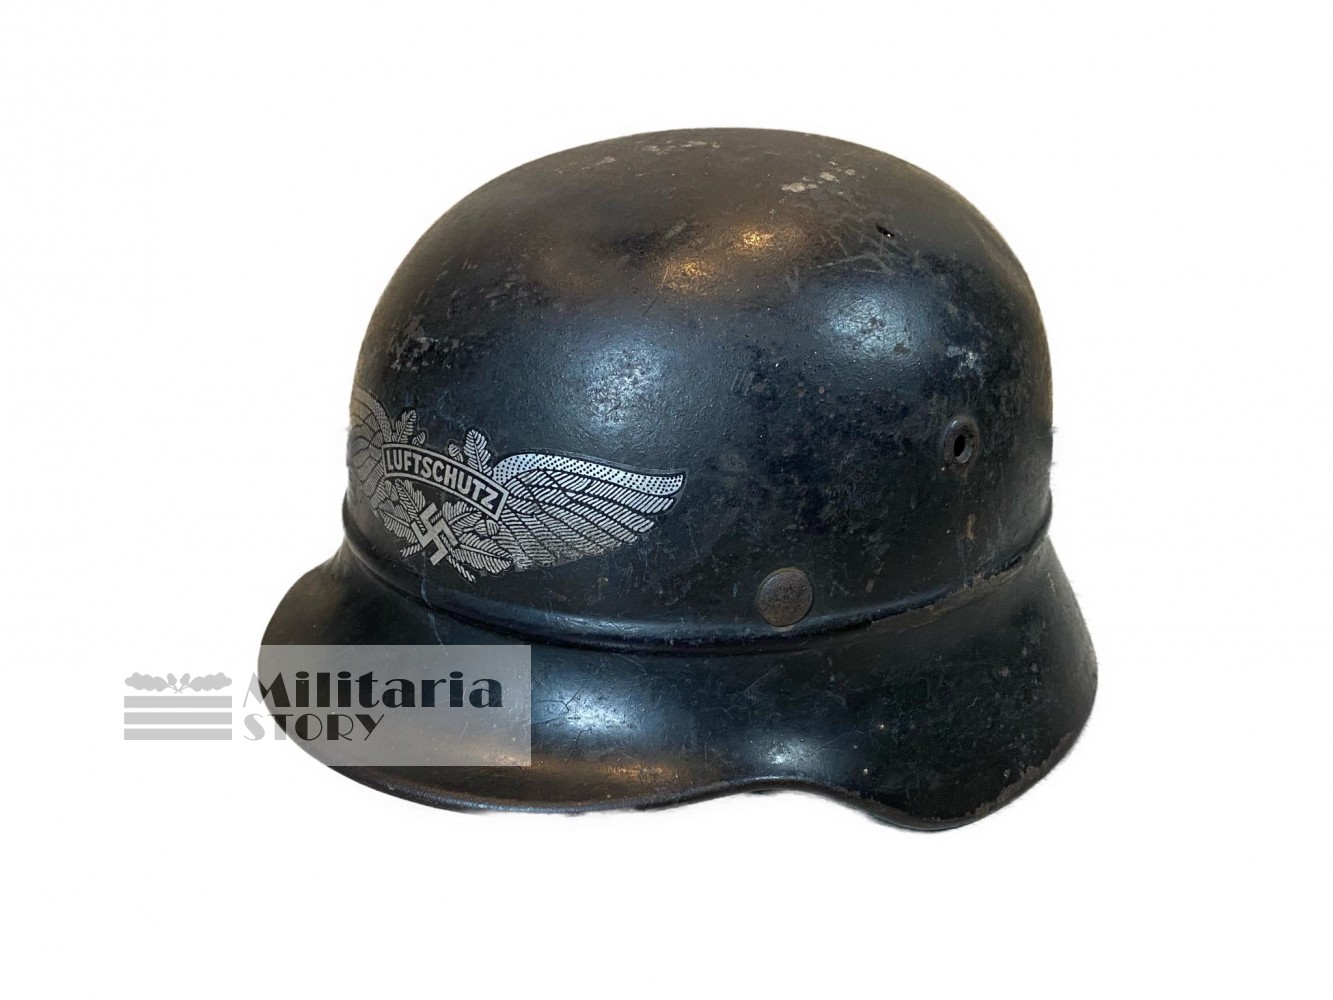 Luftschutz M40 helmet